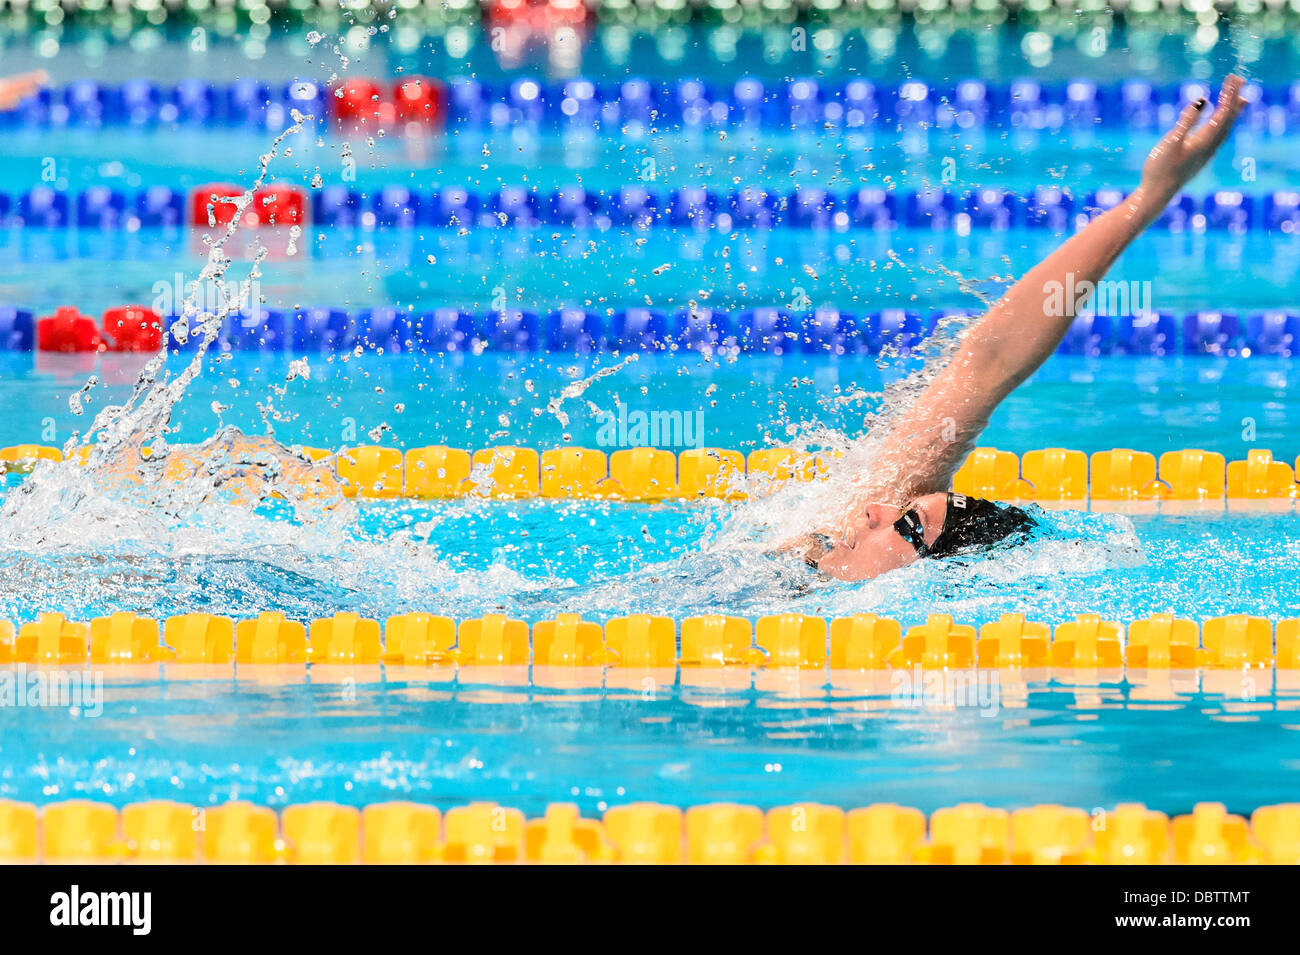 Barcelone, Espagne. Août 4th, 2013 : Hongrie's Katinka Hosszu participe à la women's 400m quatre nages individuel à la 15e finale des Championnats du Monde FINA à Barcelone. Credit : matthi/Alamy Live News Banque D'Images